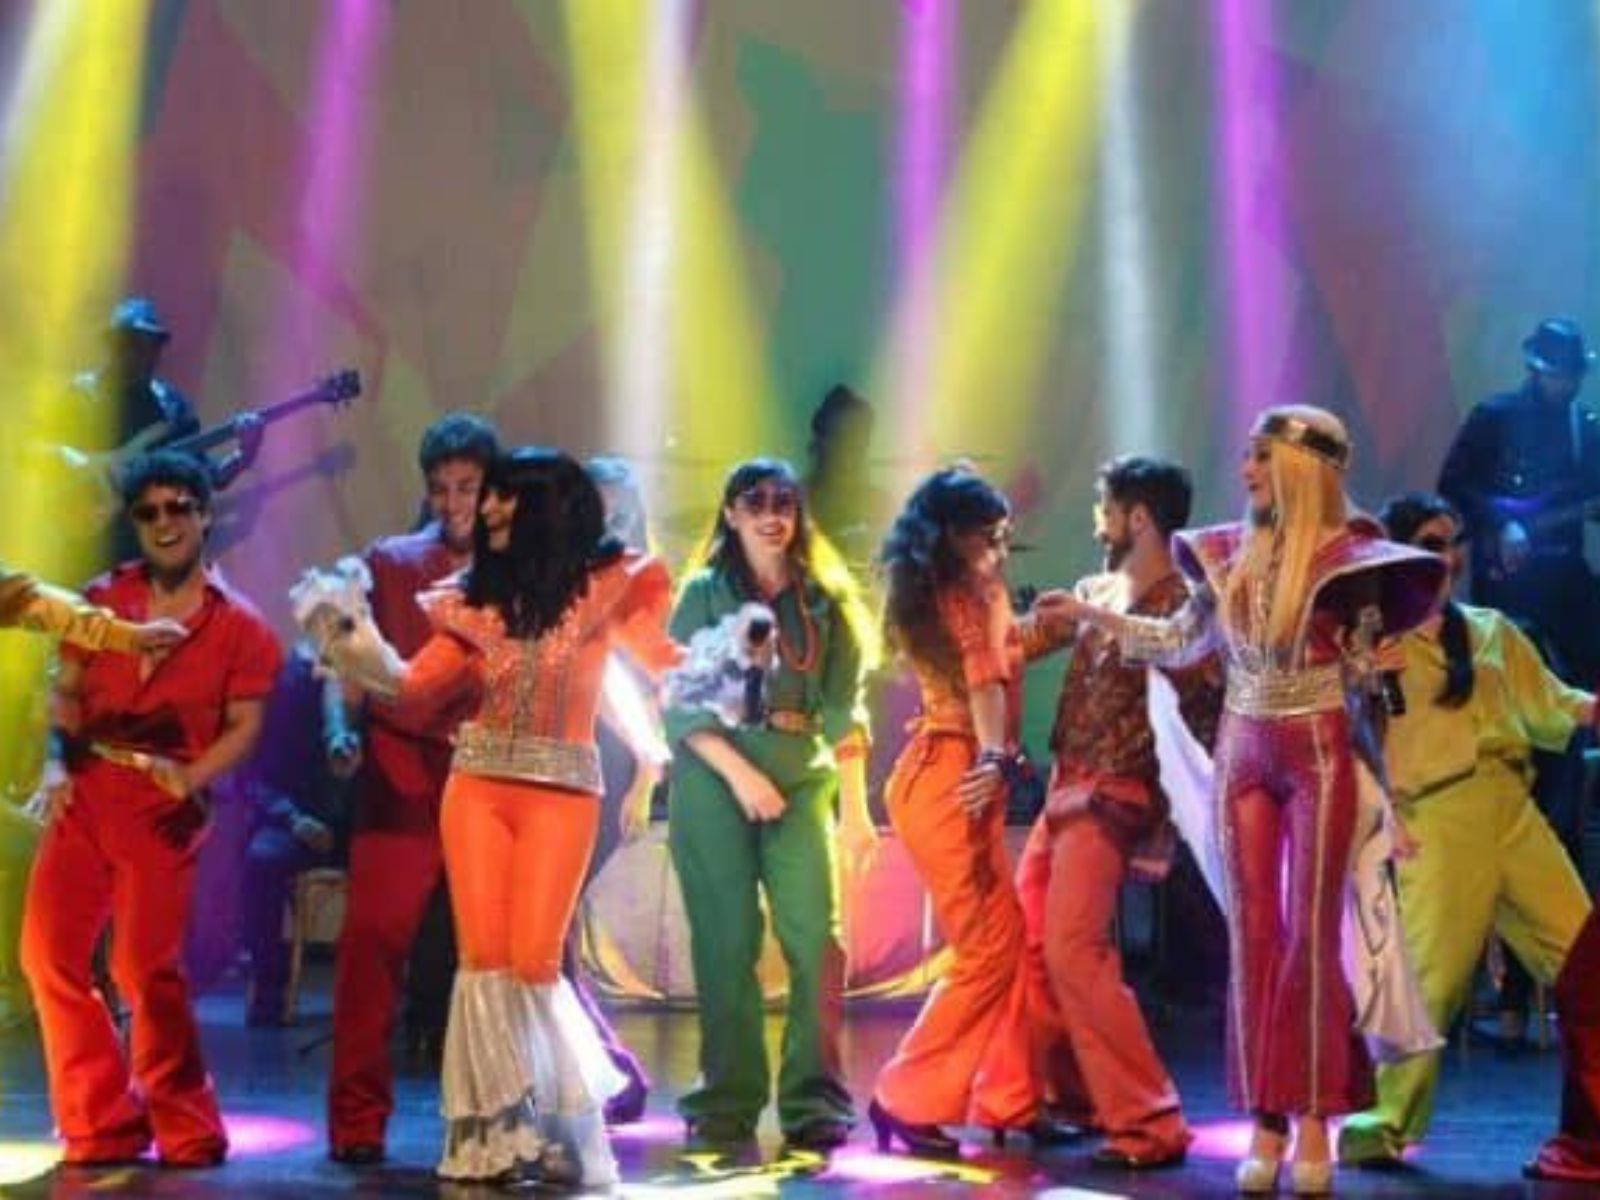 Natal recebe espetáculo musical em homenagem a banda sueca ABBA no próximo domingo (7)